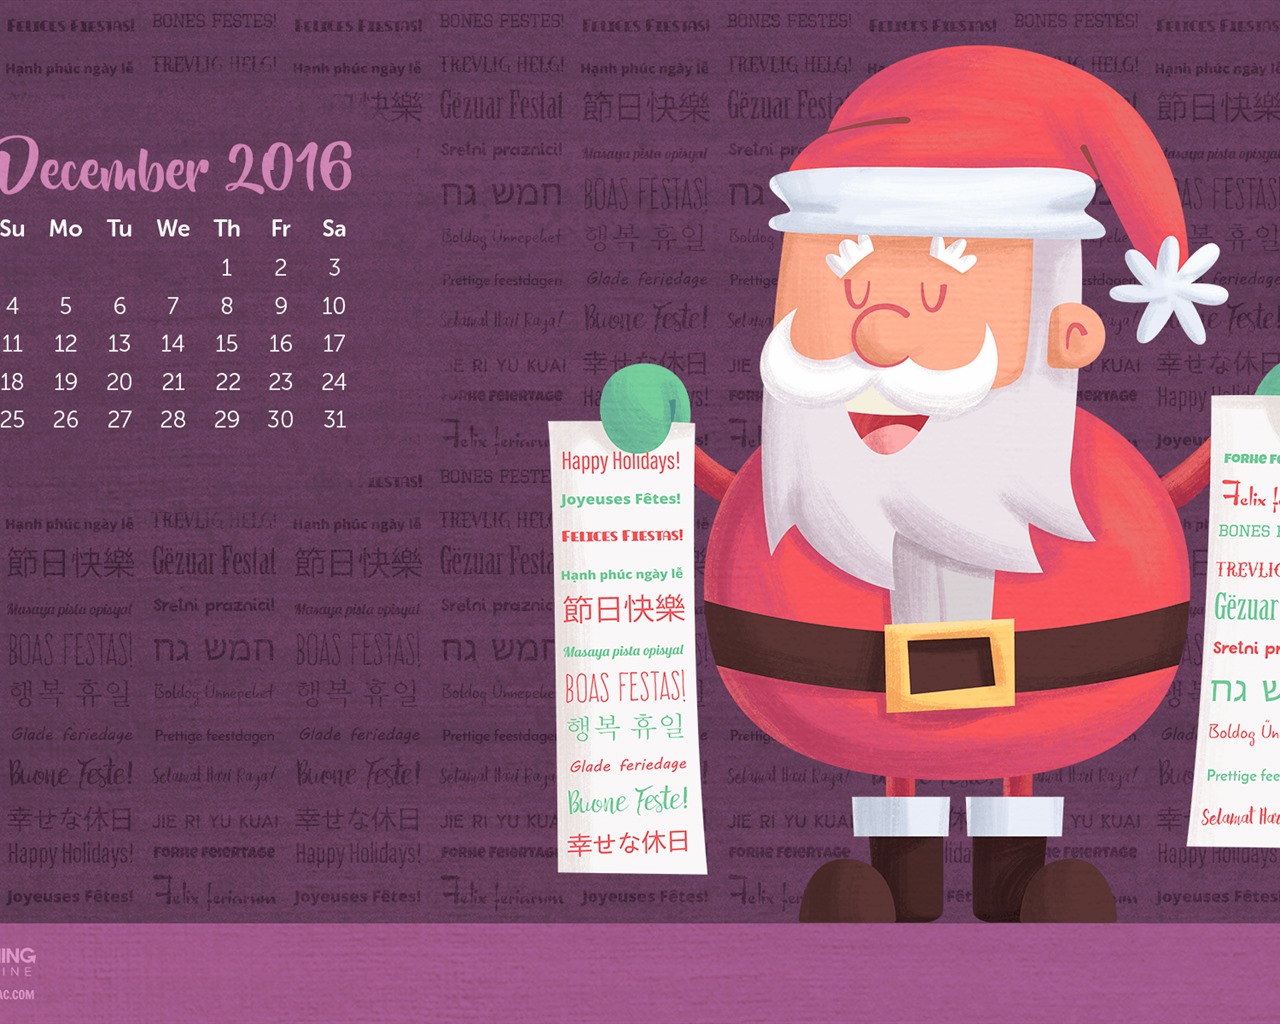 December 2016 Christmas theme calendar wallpaper (1) #24 - 1280x1024